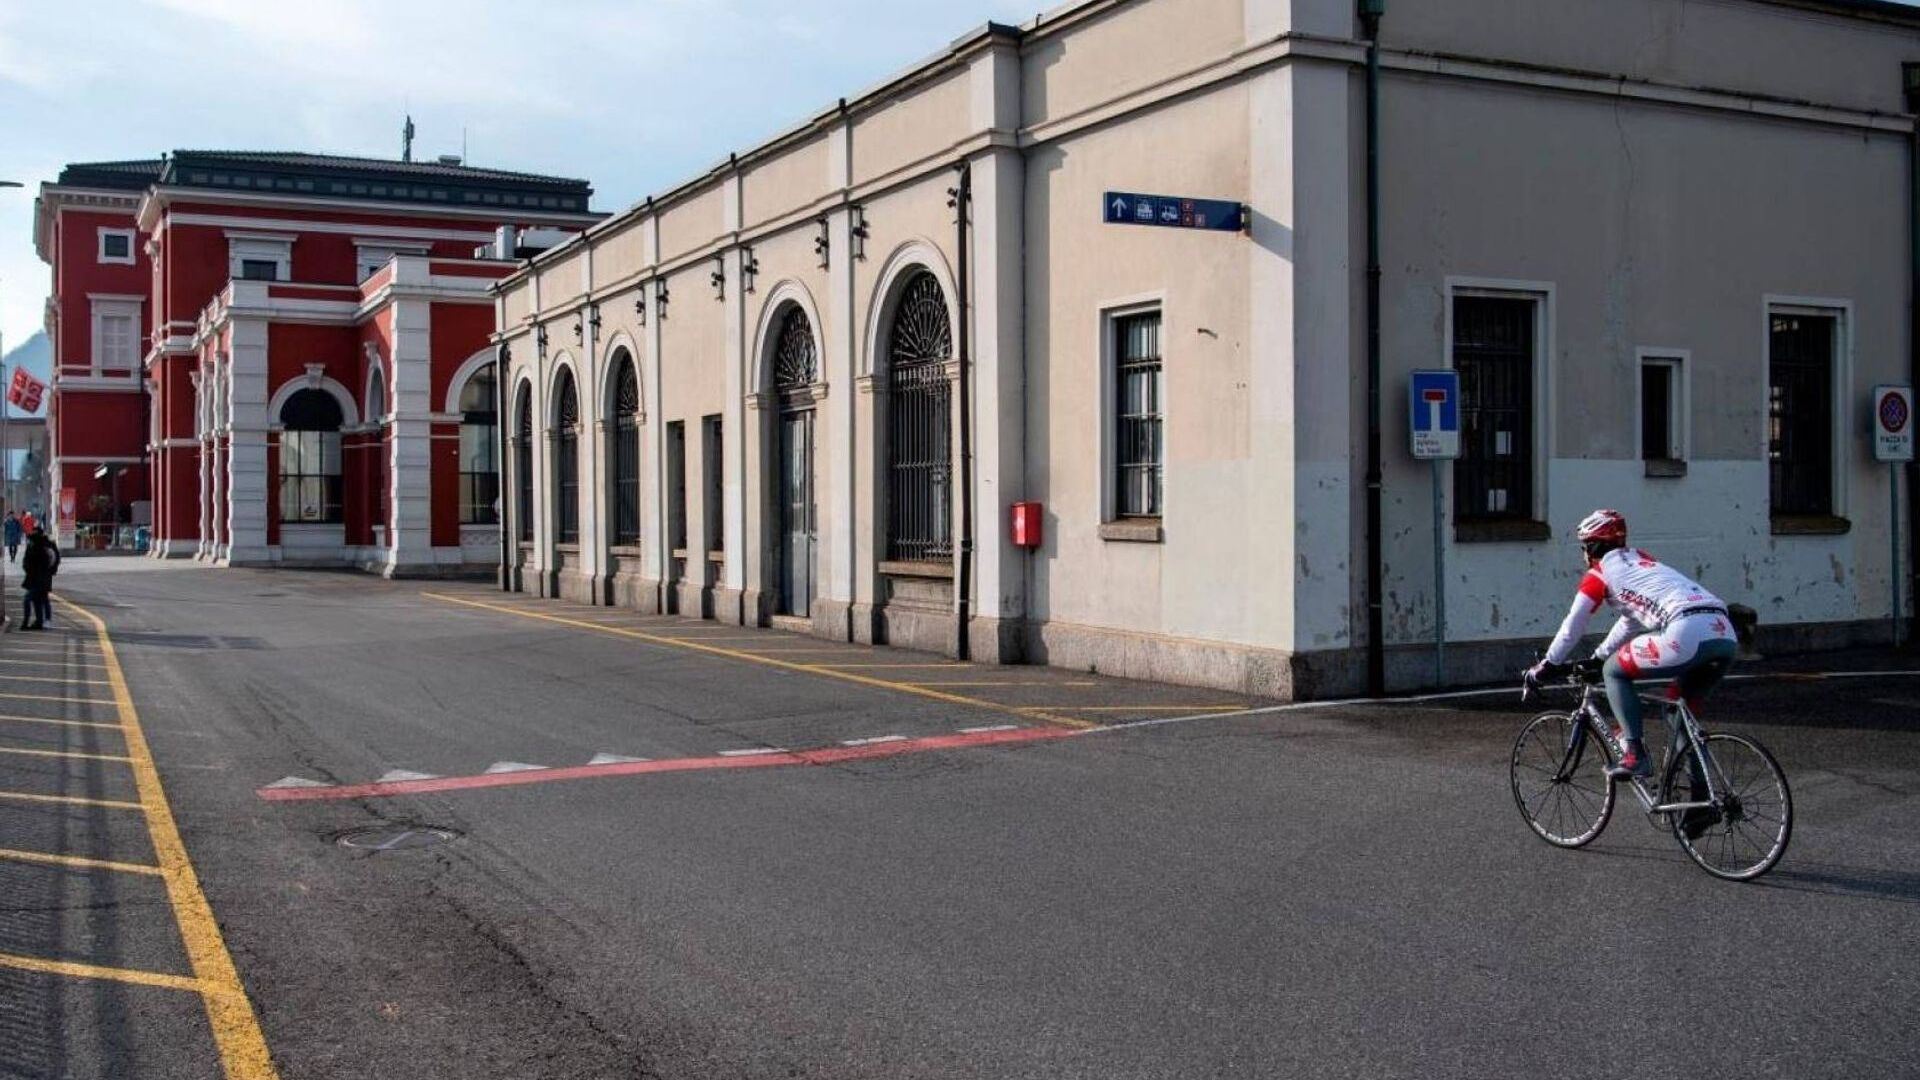 Yeni Lugano-Besso alt geçidinin şantiyesi ve SBB CFF FFS istasyonunun sözde "hizmet binası"nın taşınması